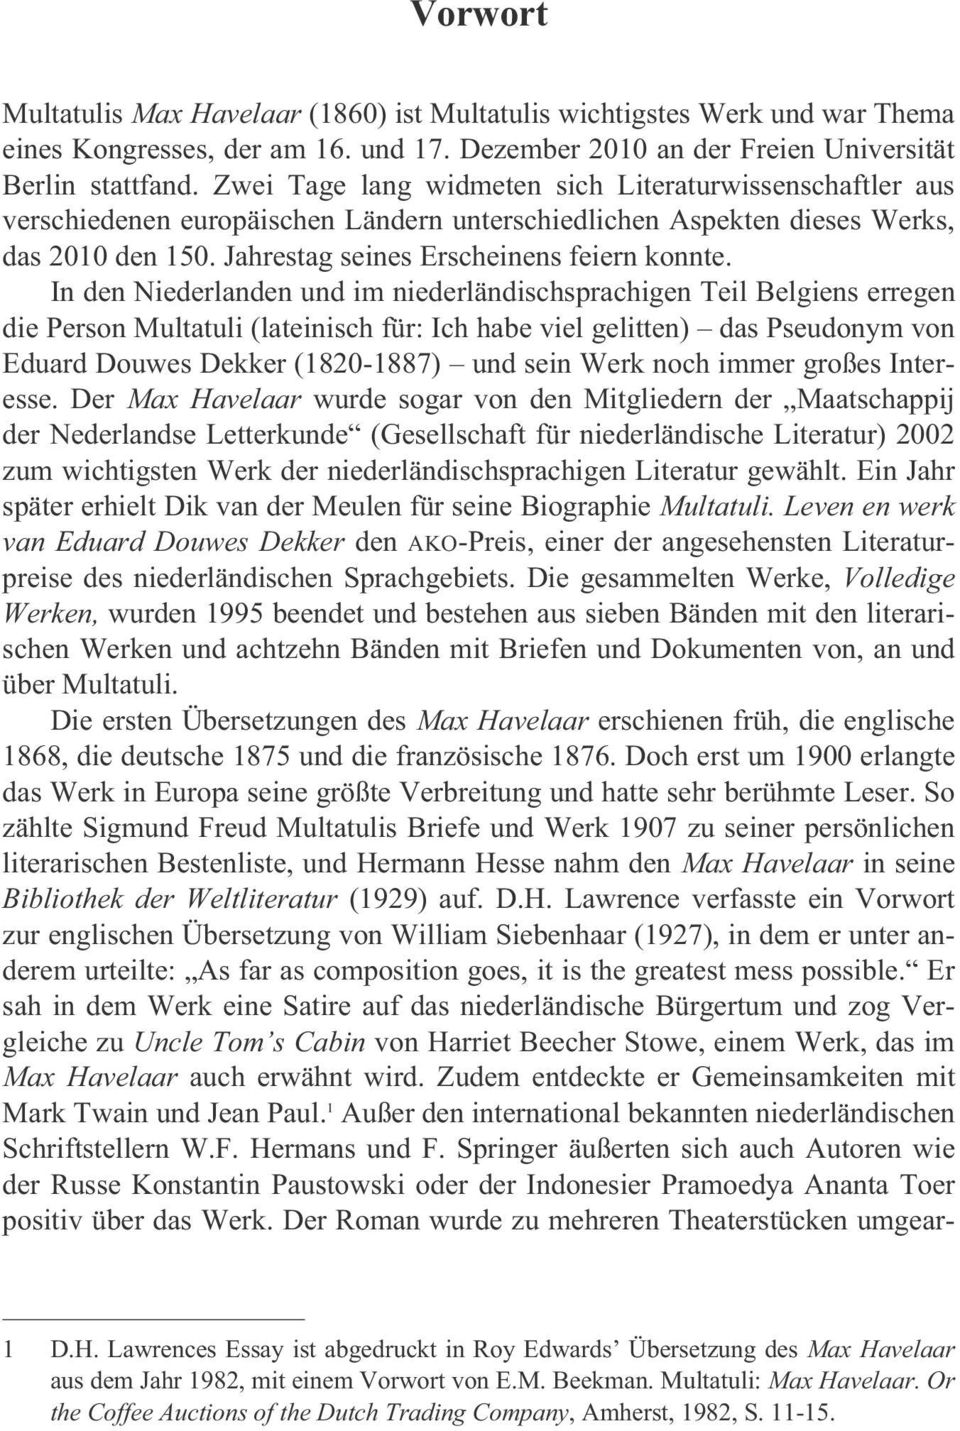 In den Niederlanden und im niederländischsprachigen Teil Belgiens erregen die Person Multatuli (lateinisch für: Ich habe viel gelitten) das Pseudonym von Eduard Douwes Dekker (1820-1887) und sein